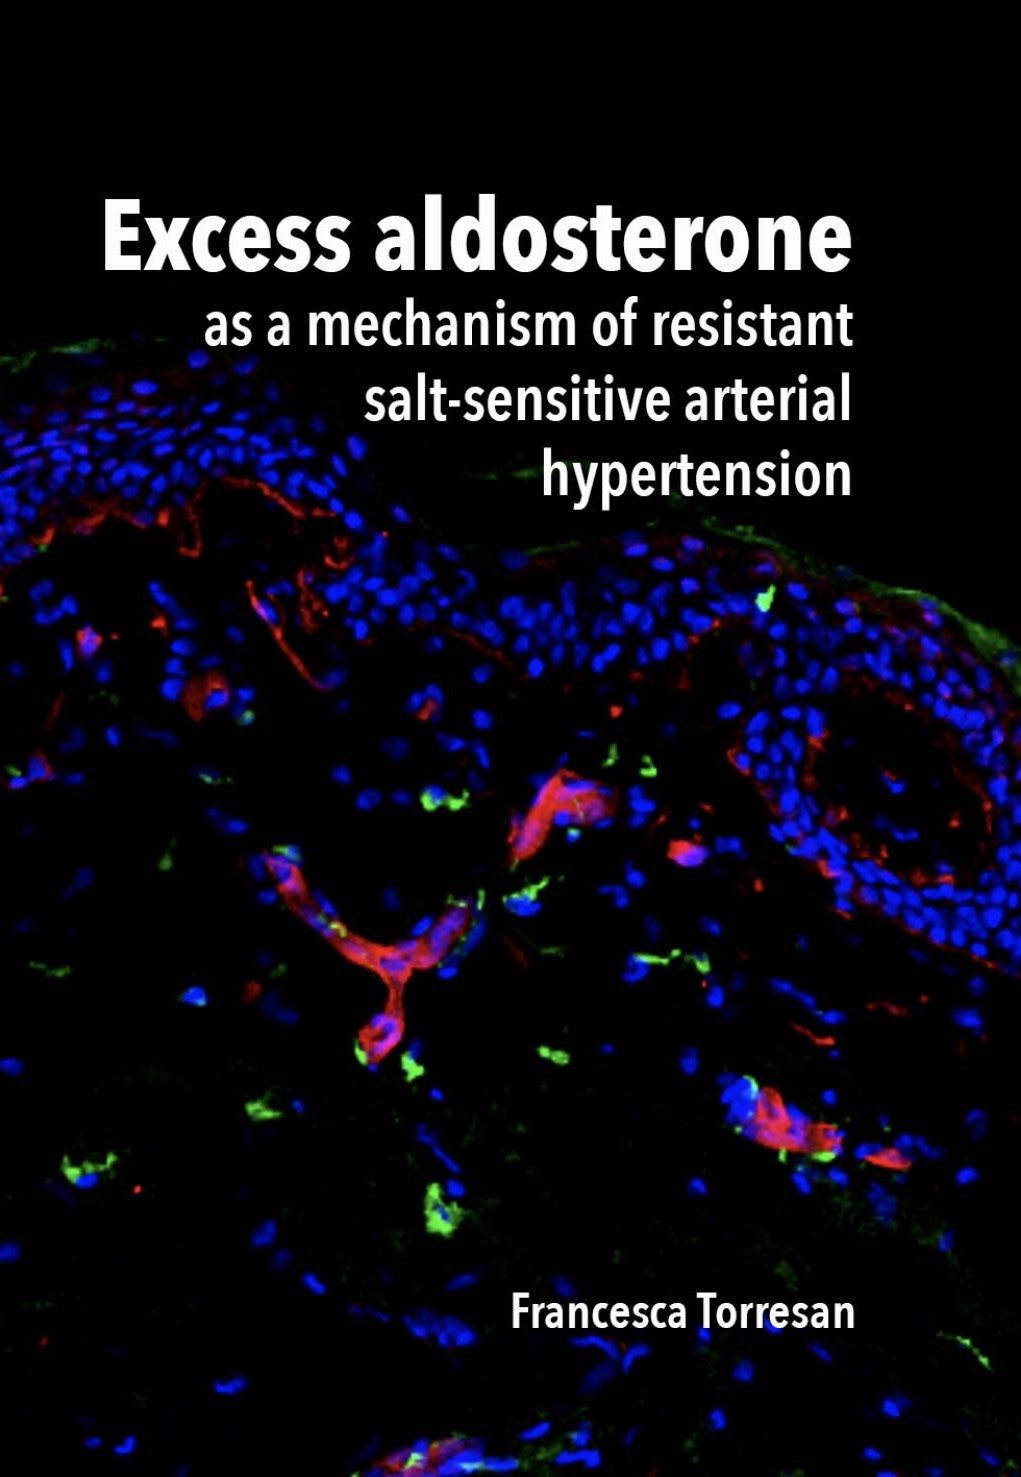 Overtollig aldosteron – nieuwe inzichten over zoutgevoelige arteriële hypertensie